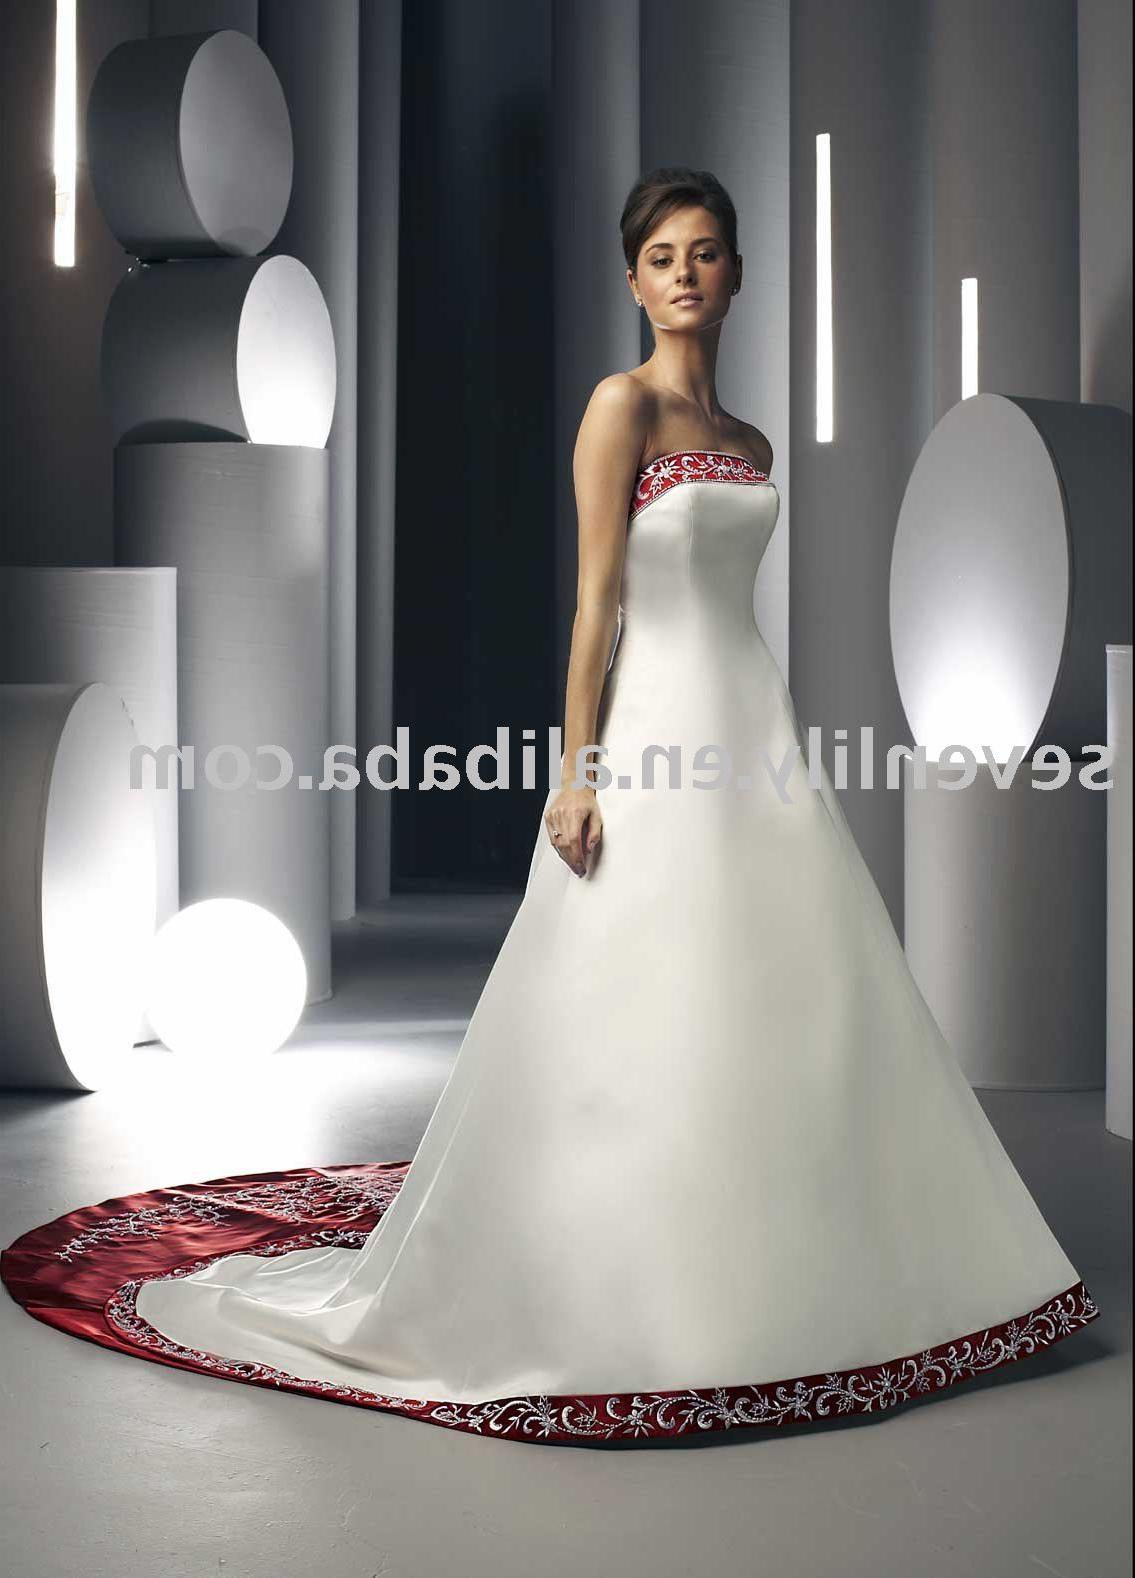 designer wedding gowns